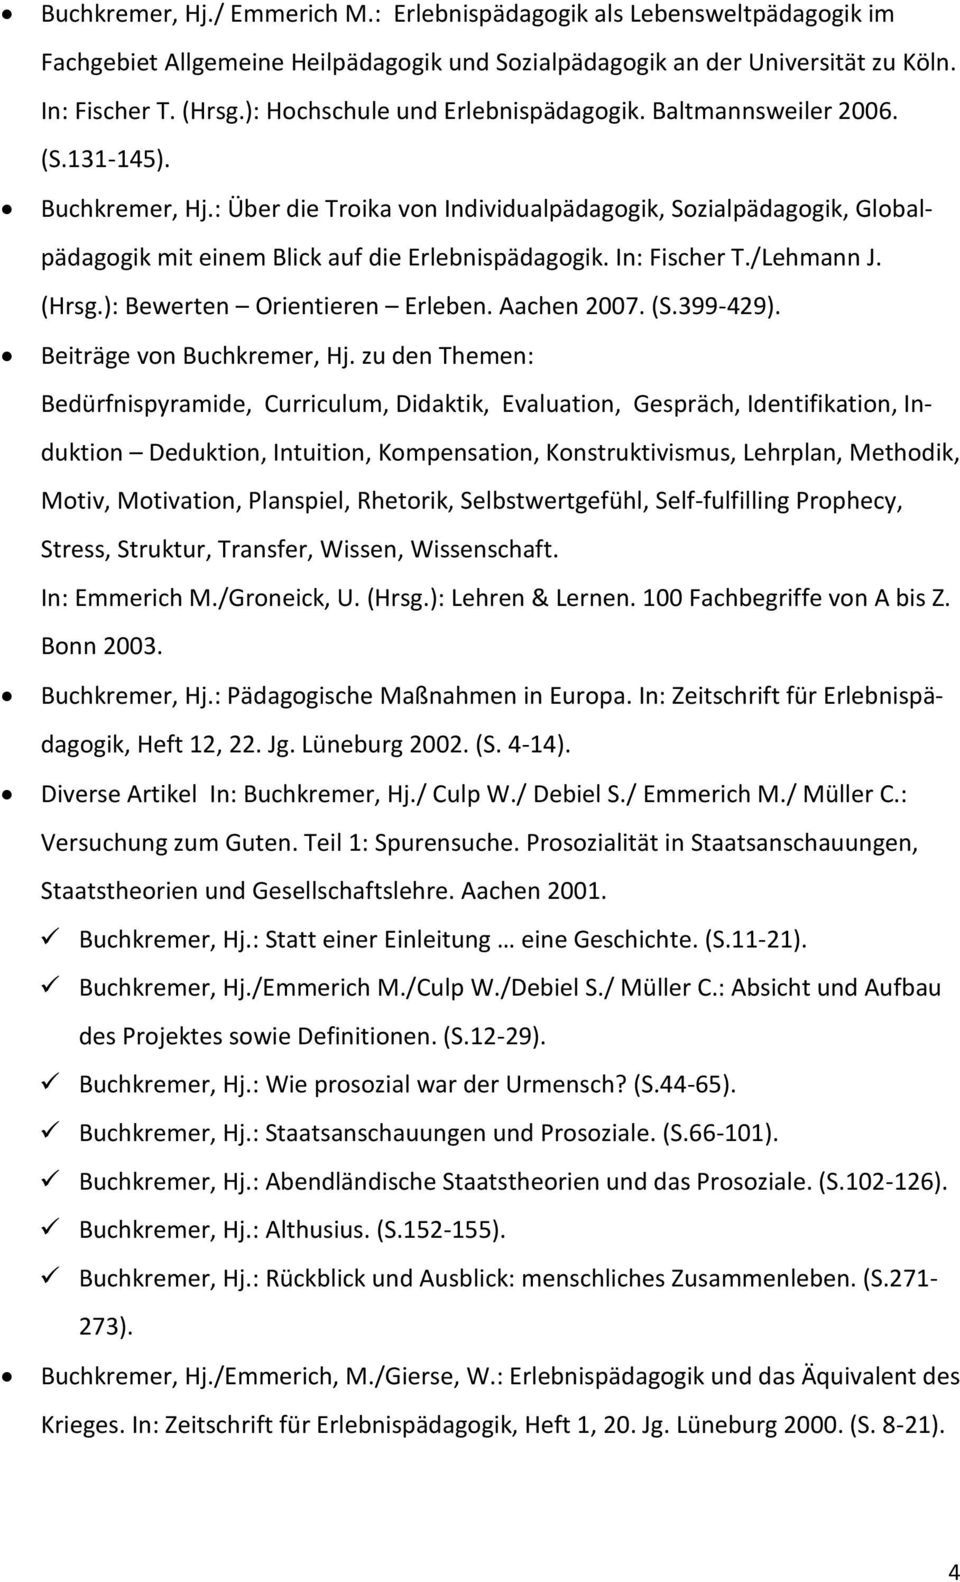 : Über die Troika von Individualpädagogik, Sozialpädagogik, Globalpädagogik mit einem Blick auf die Erlebnispädagogik. In: Fischer T./Lehmann J. (Hrsg.): Bewerten Orientieren Erleben. Aachen 2007. (S.